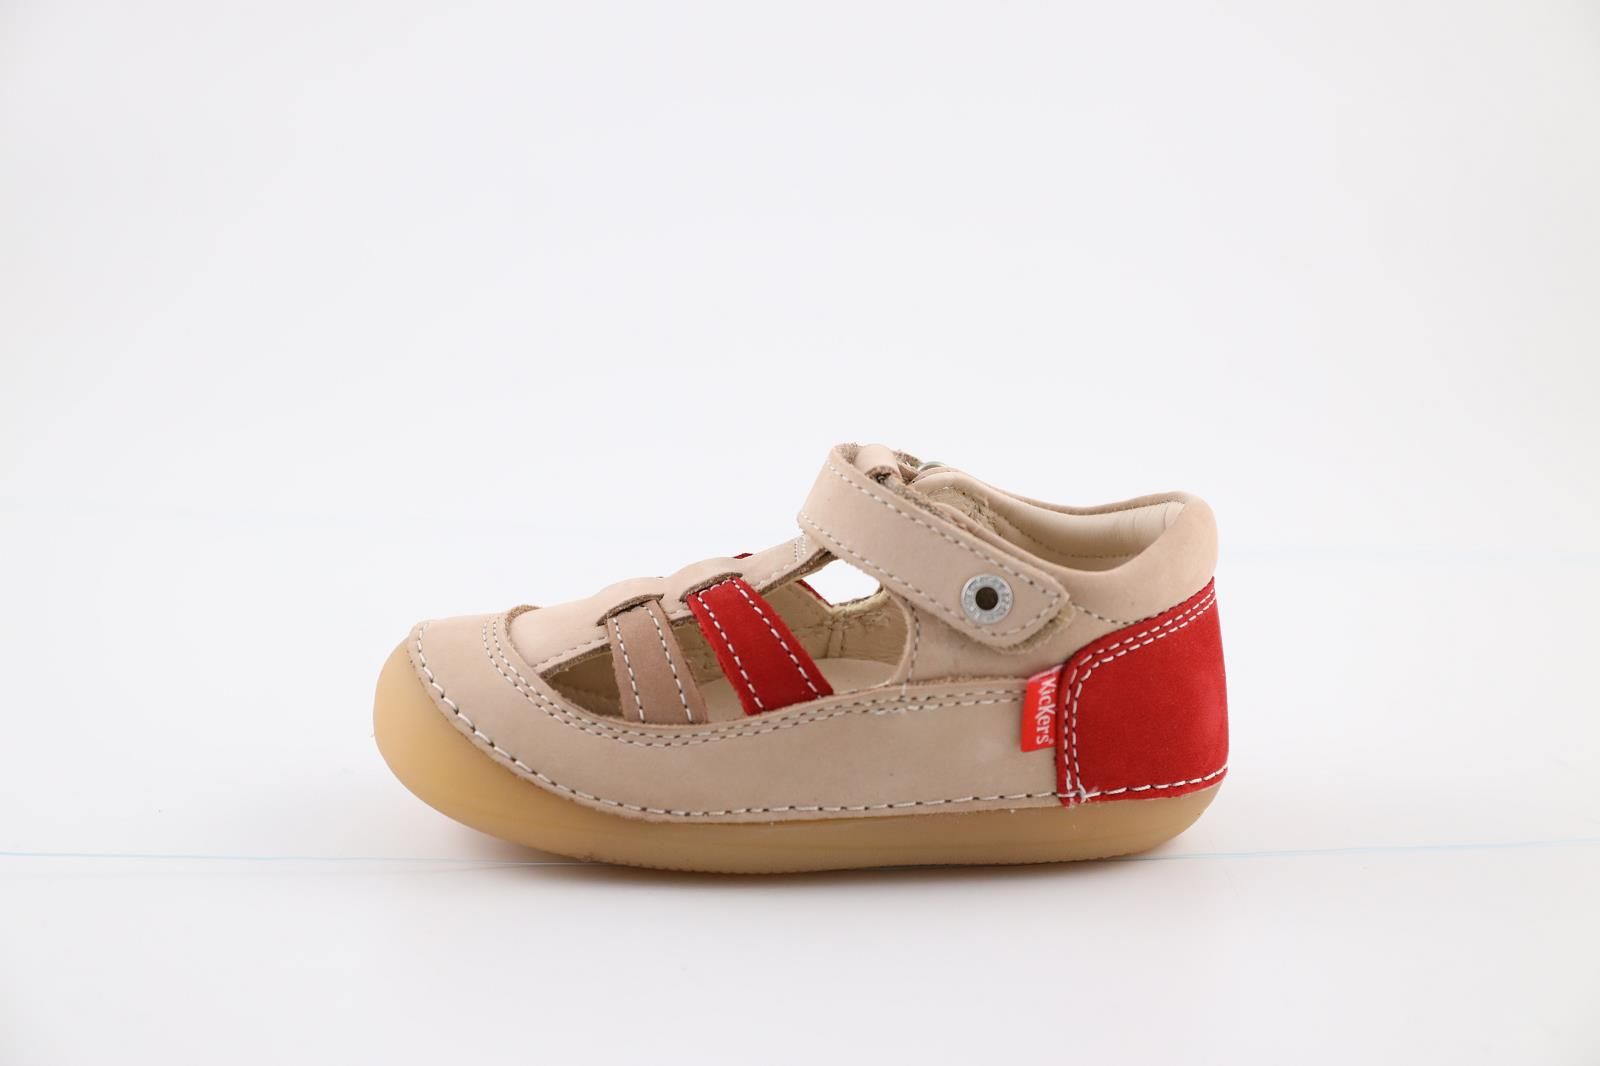 Kickers Chaussures Beige/Rouge enfants (Sushy - 611086-10) - Marques à Suivre